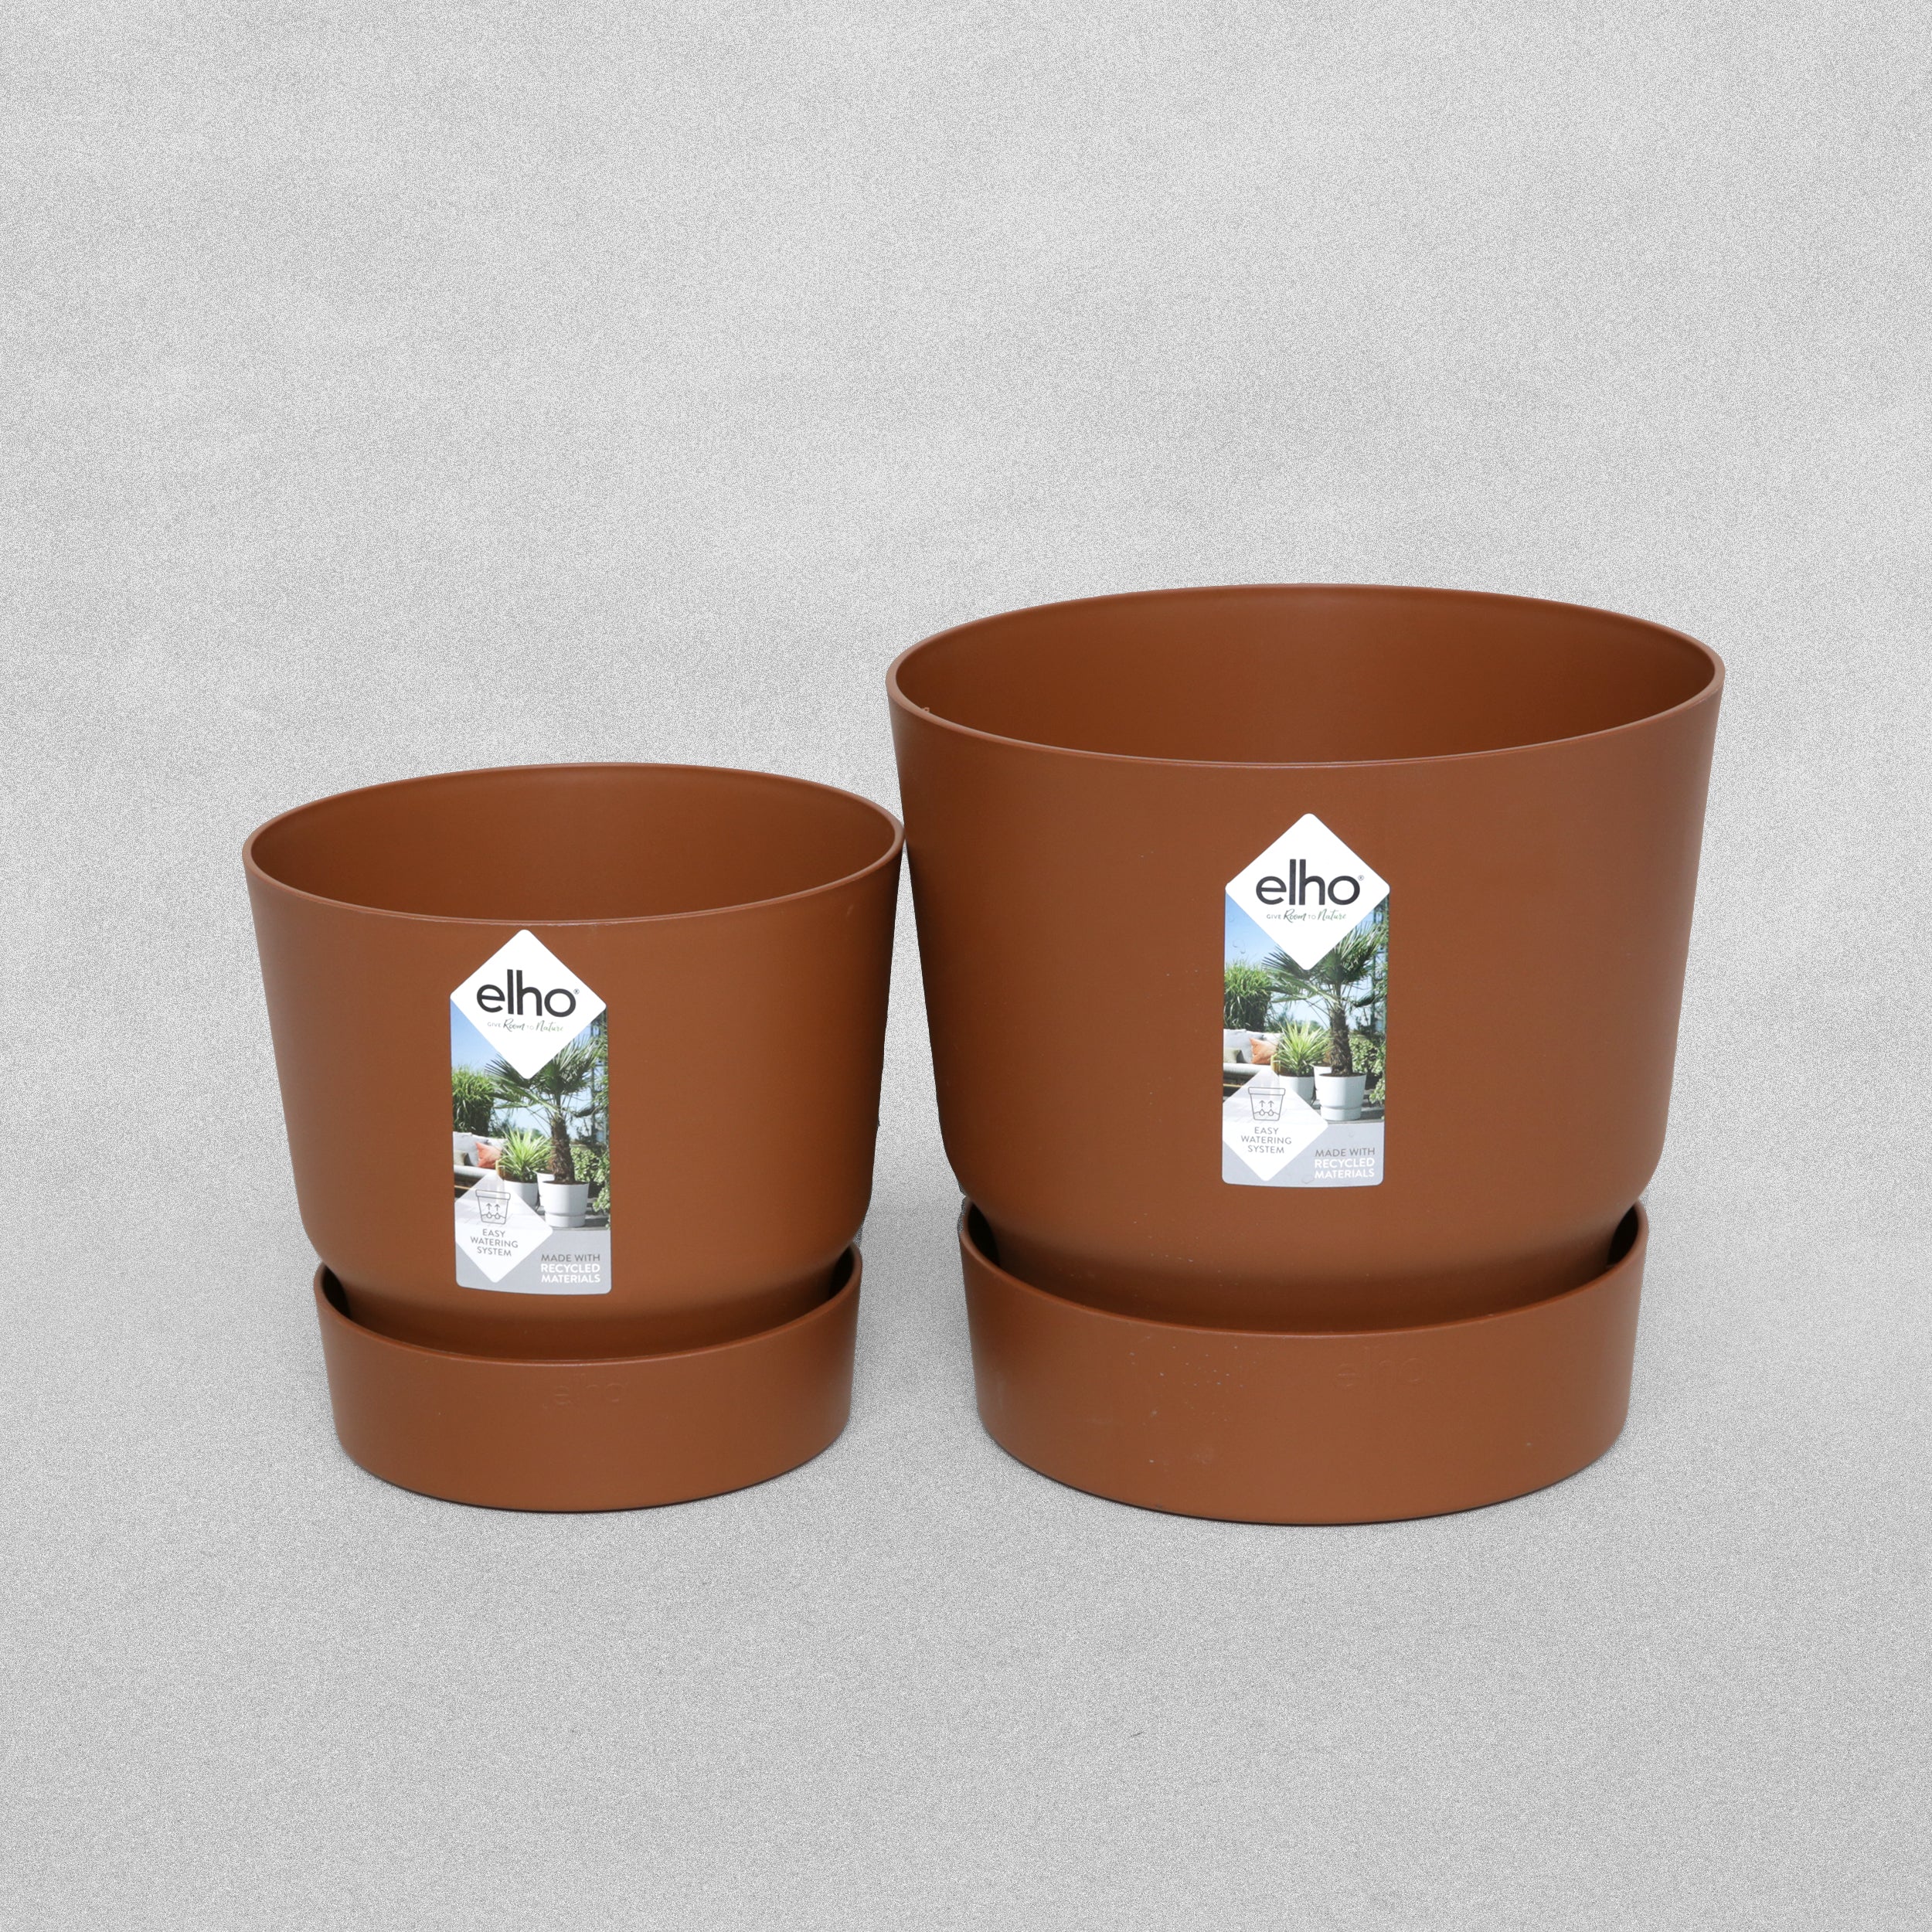 Elho Greenville Round Ginger/Brown Flower Pot